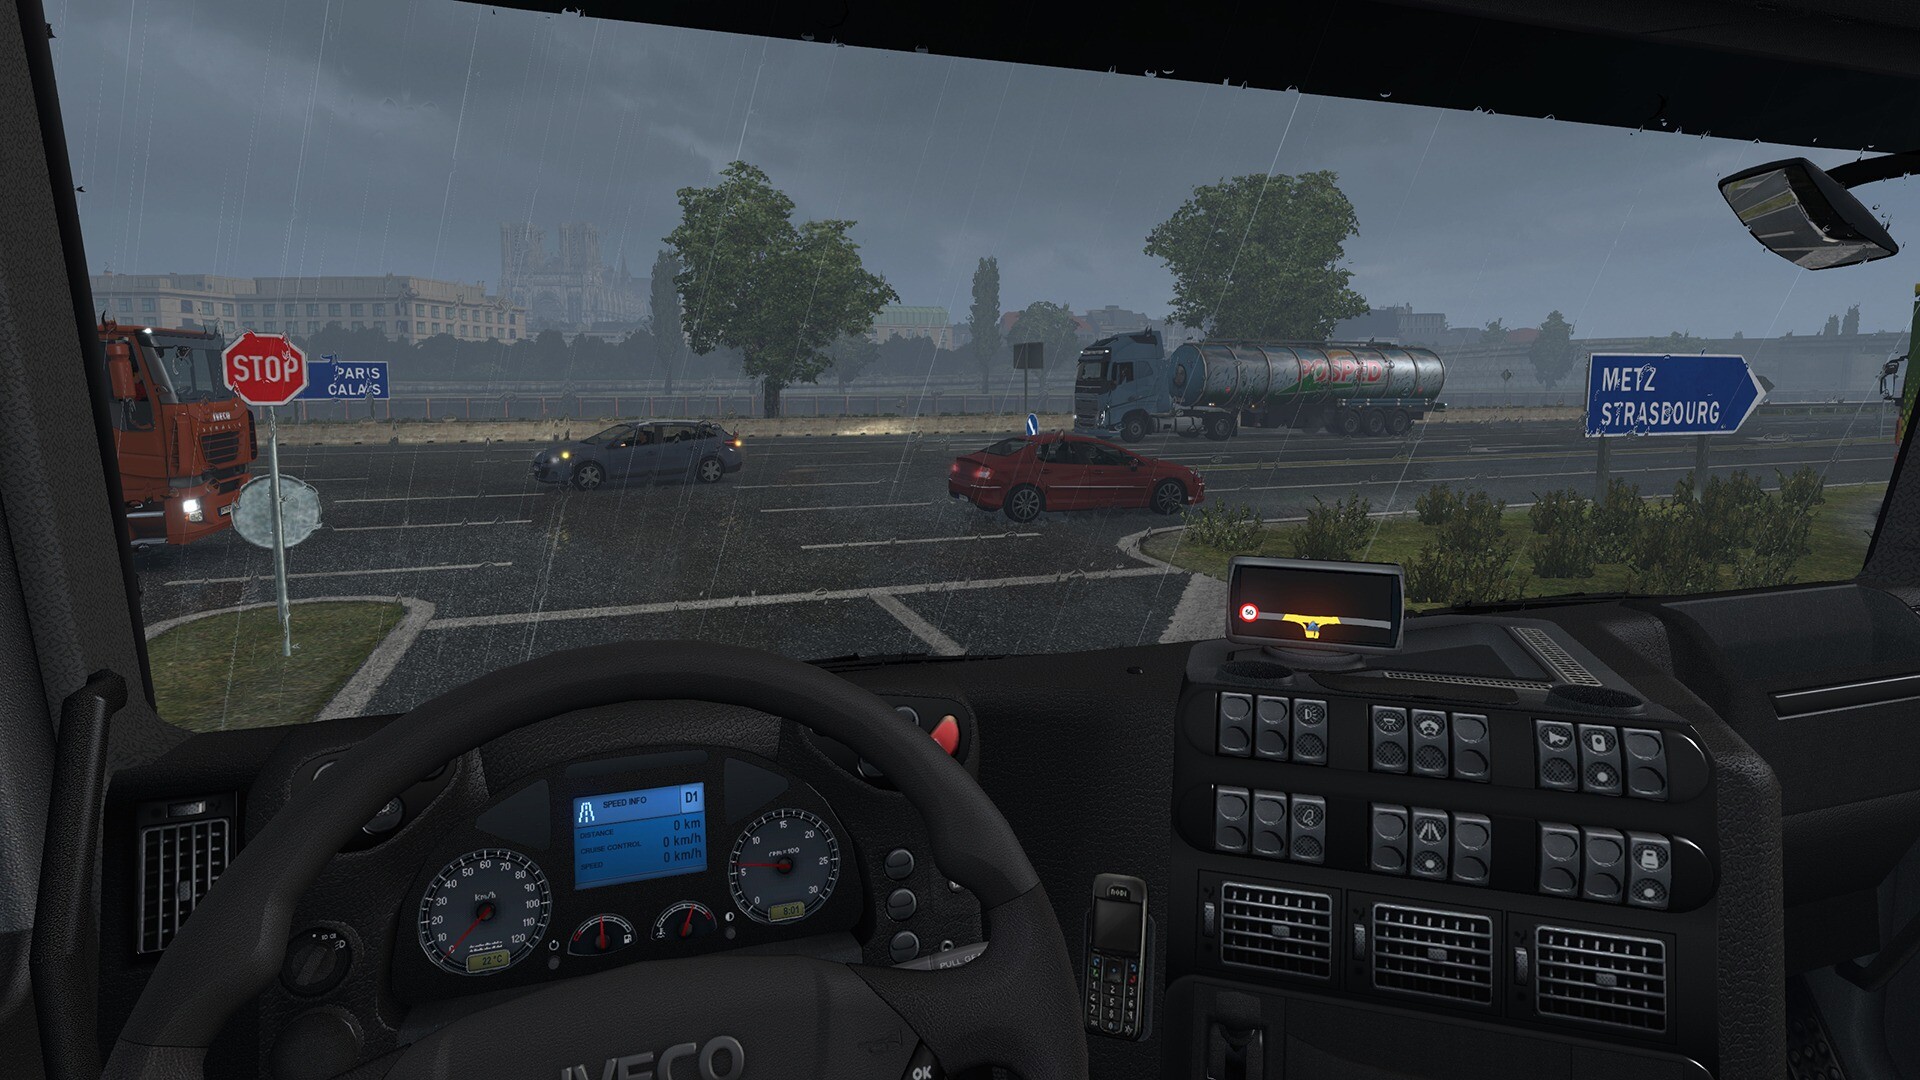 Pra quem gosta de simulador de caminhão, Euro Truck Simulator!